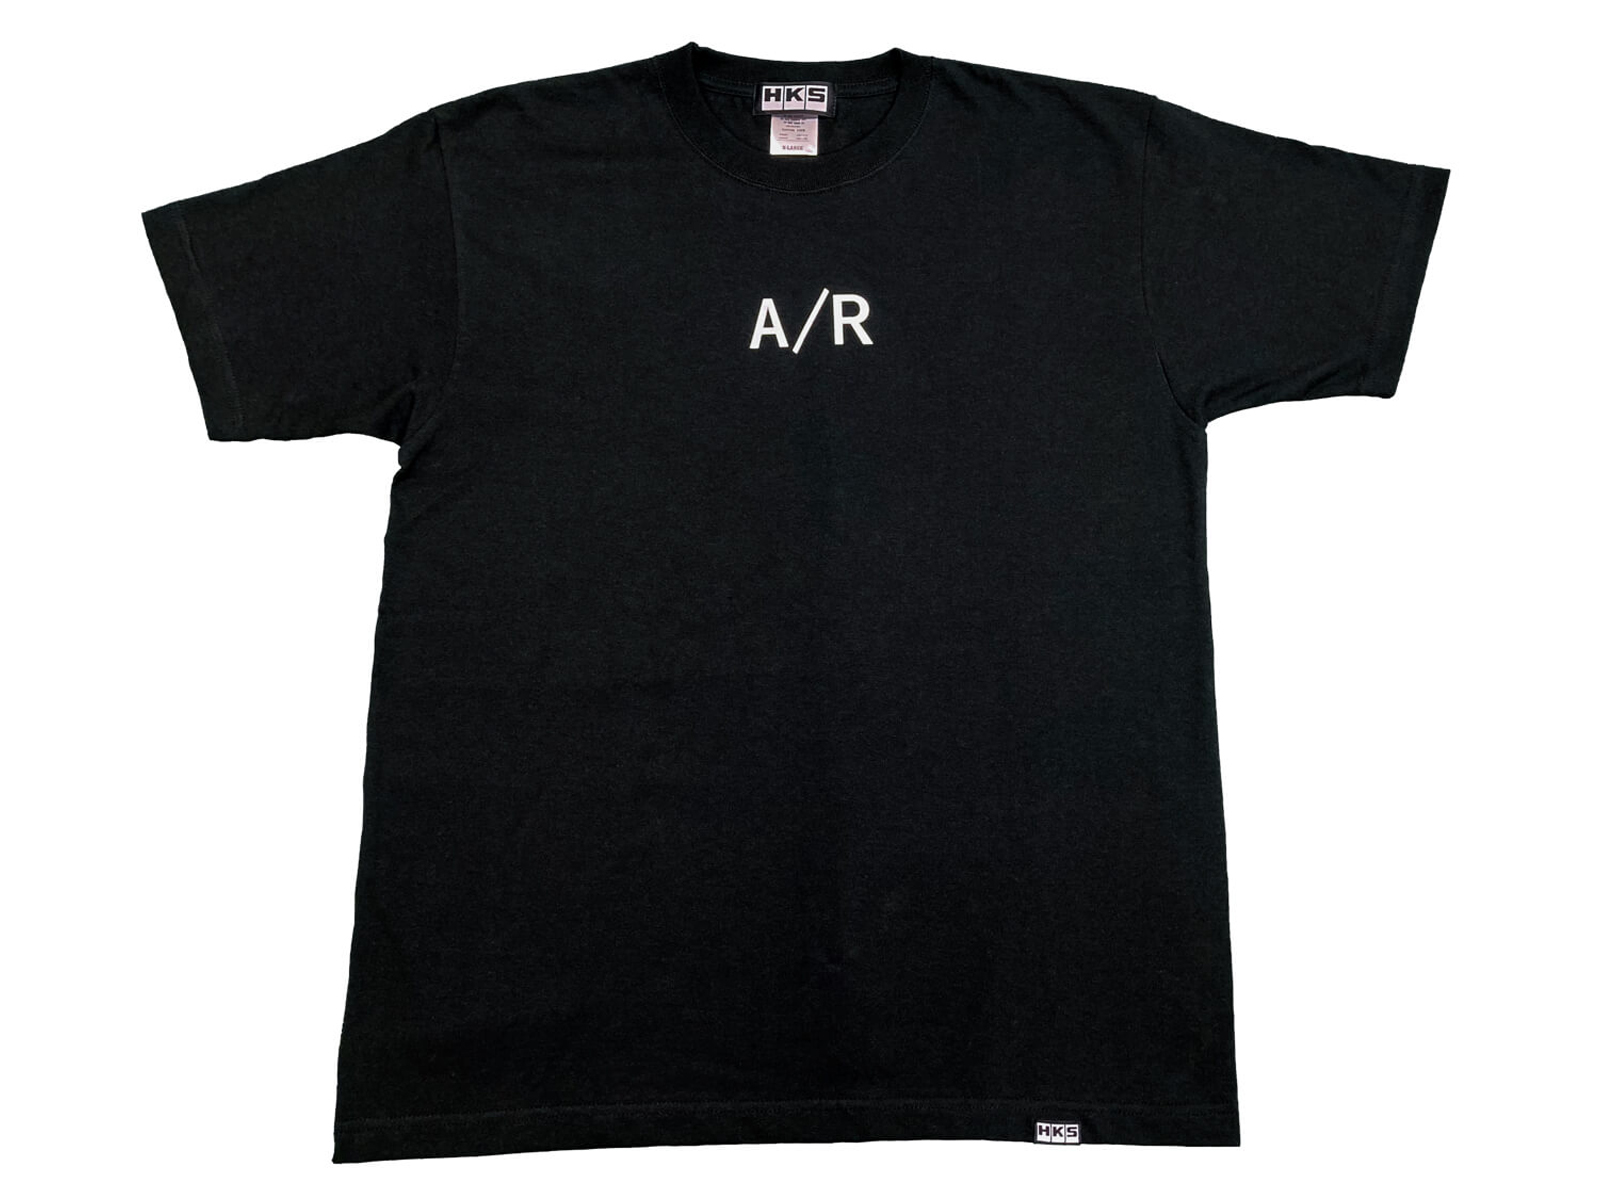 HKS A/R T-Shirt - Black